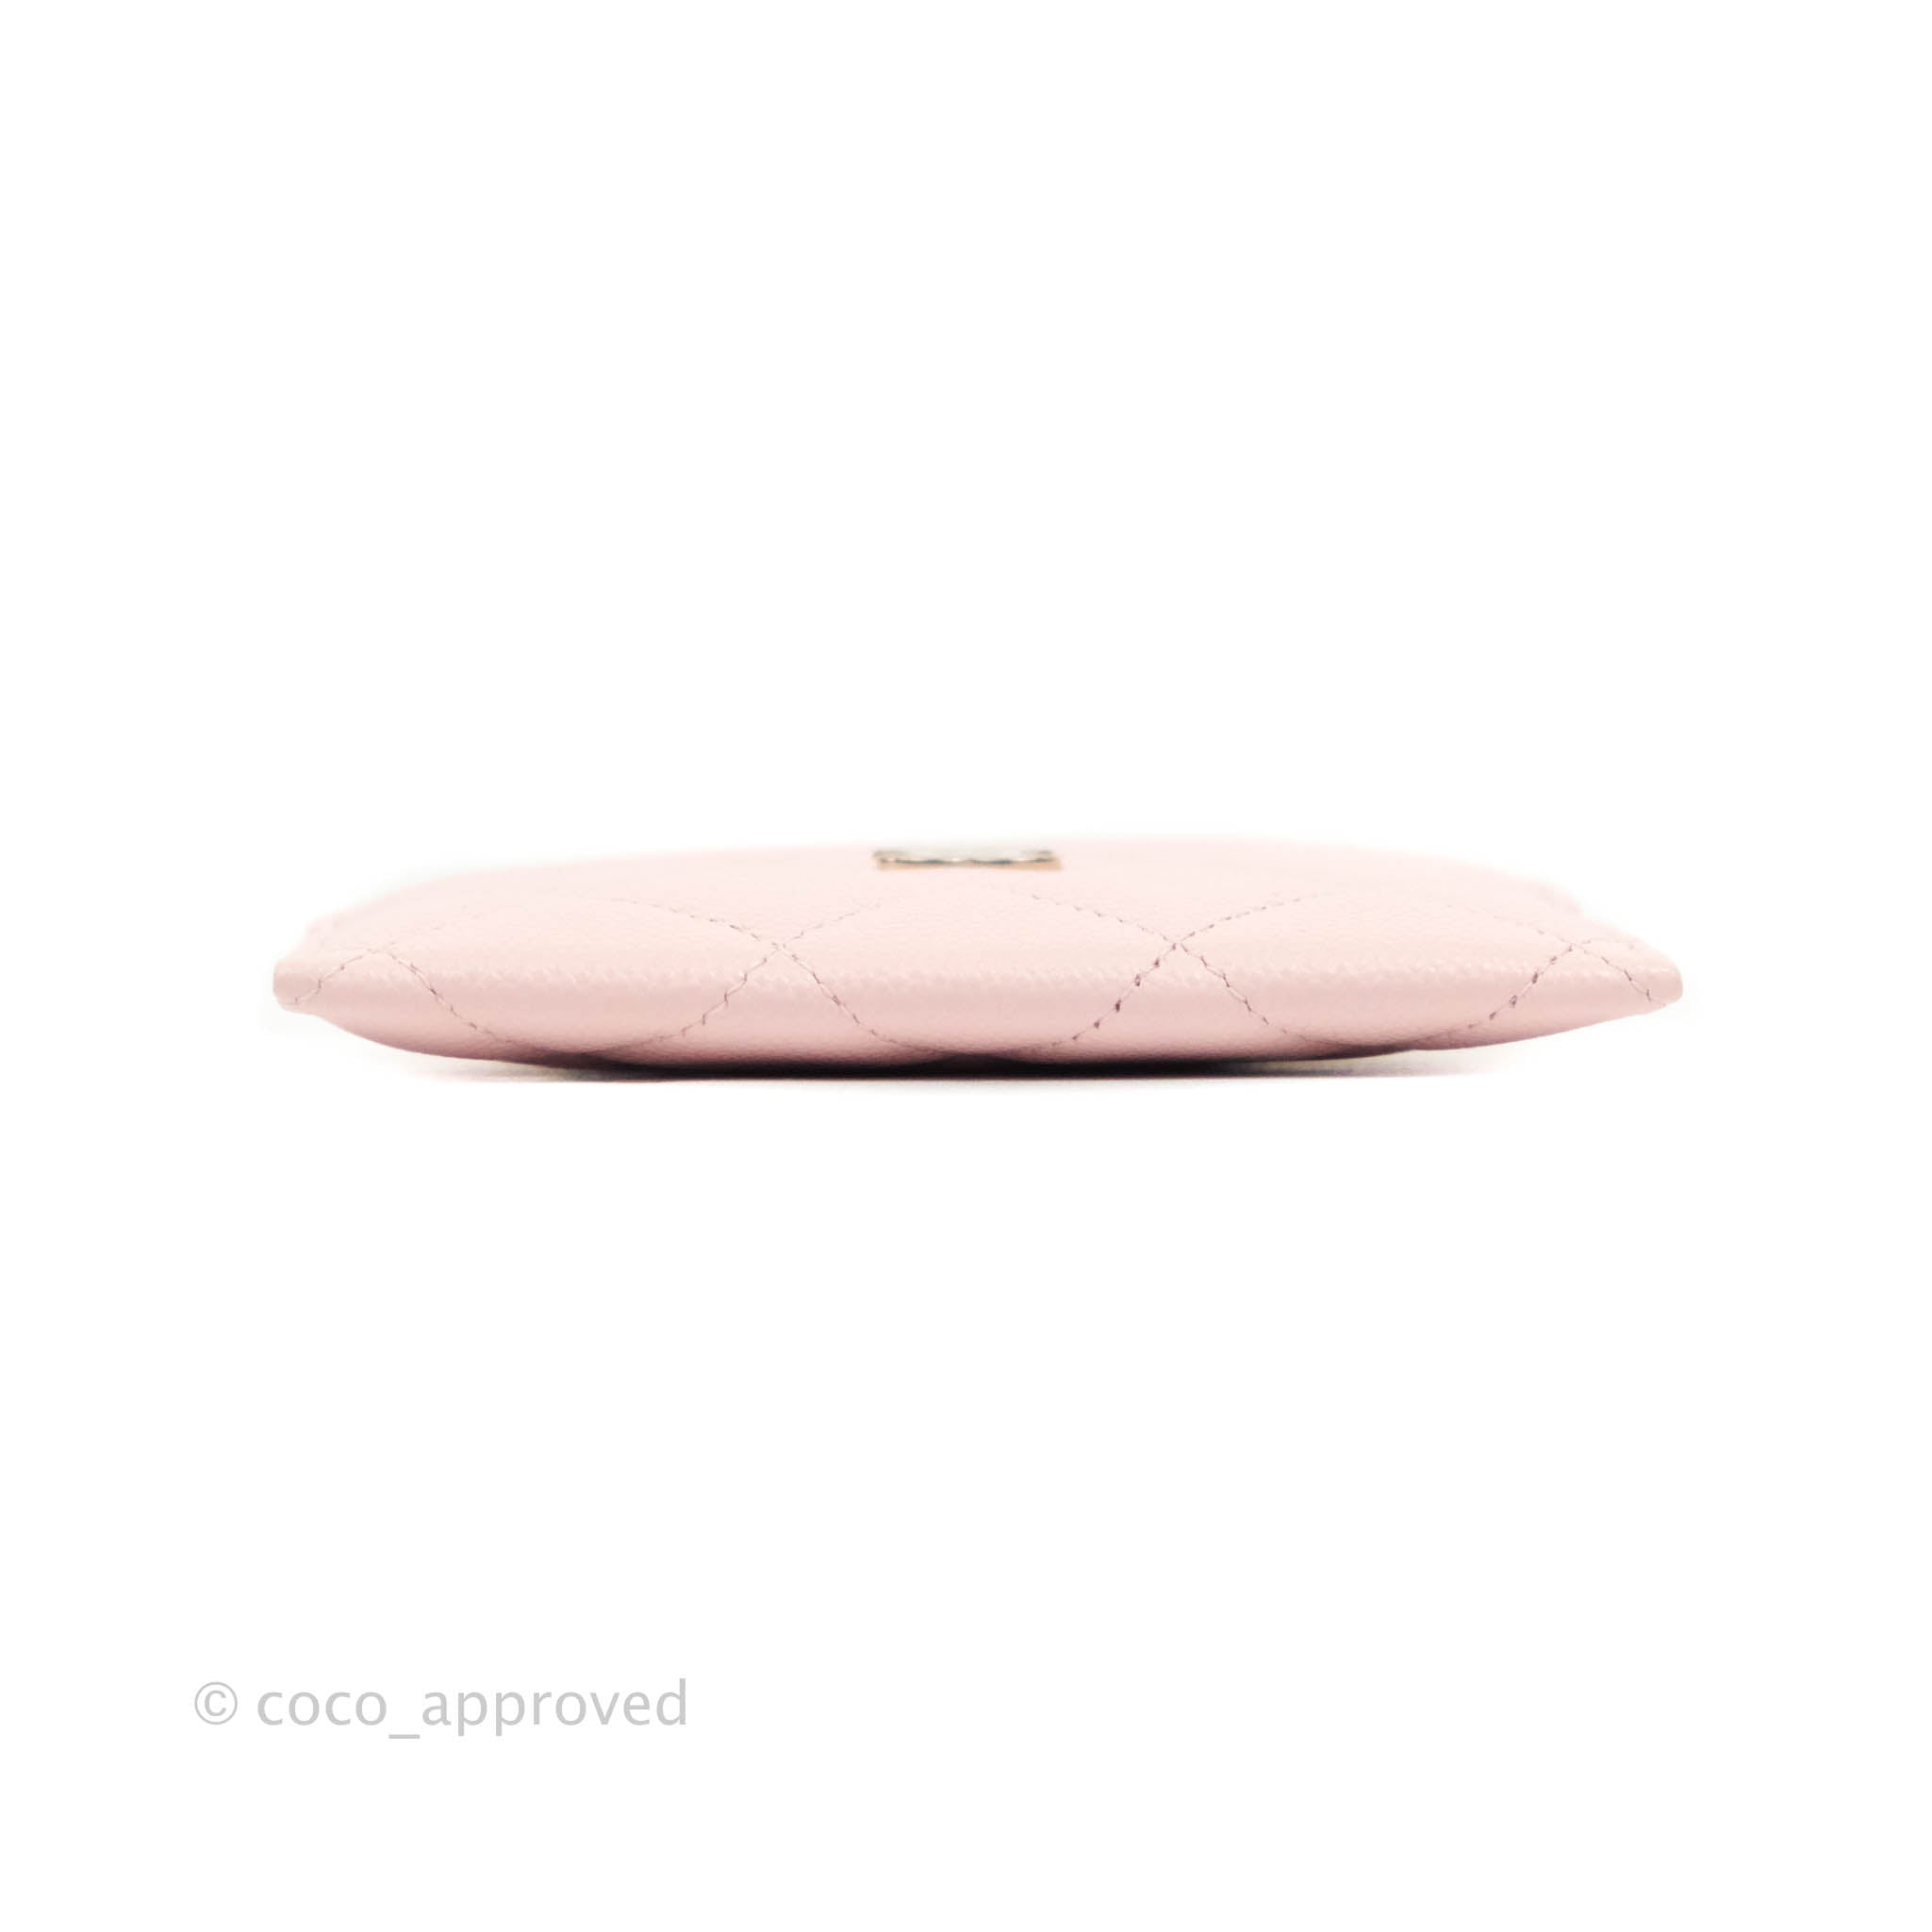 Chanel - 22C Pink Flat Cardholder